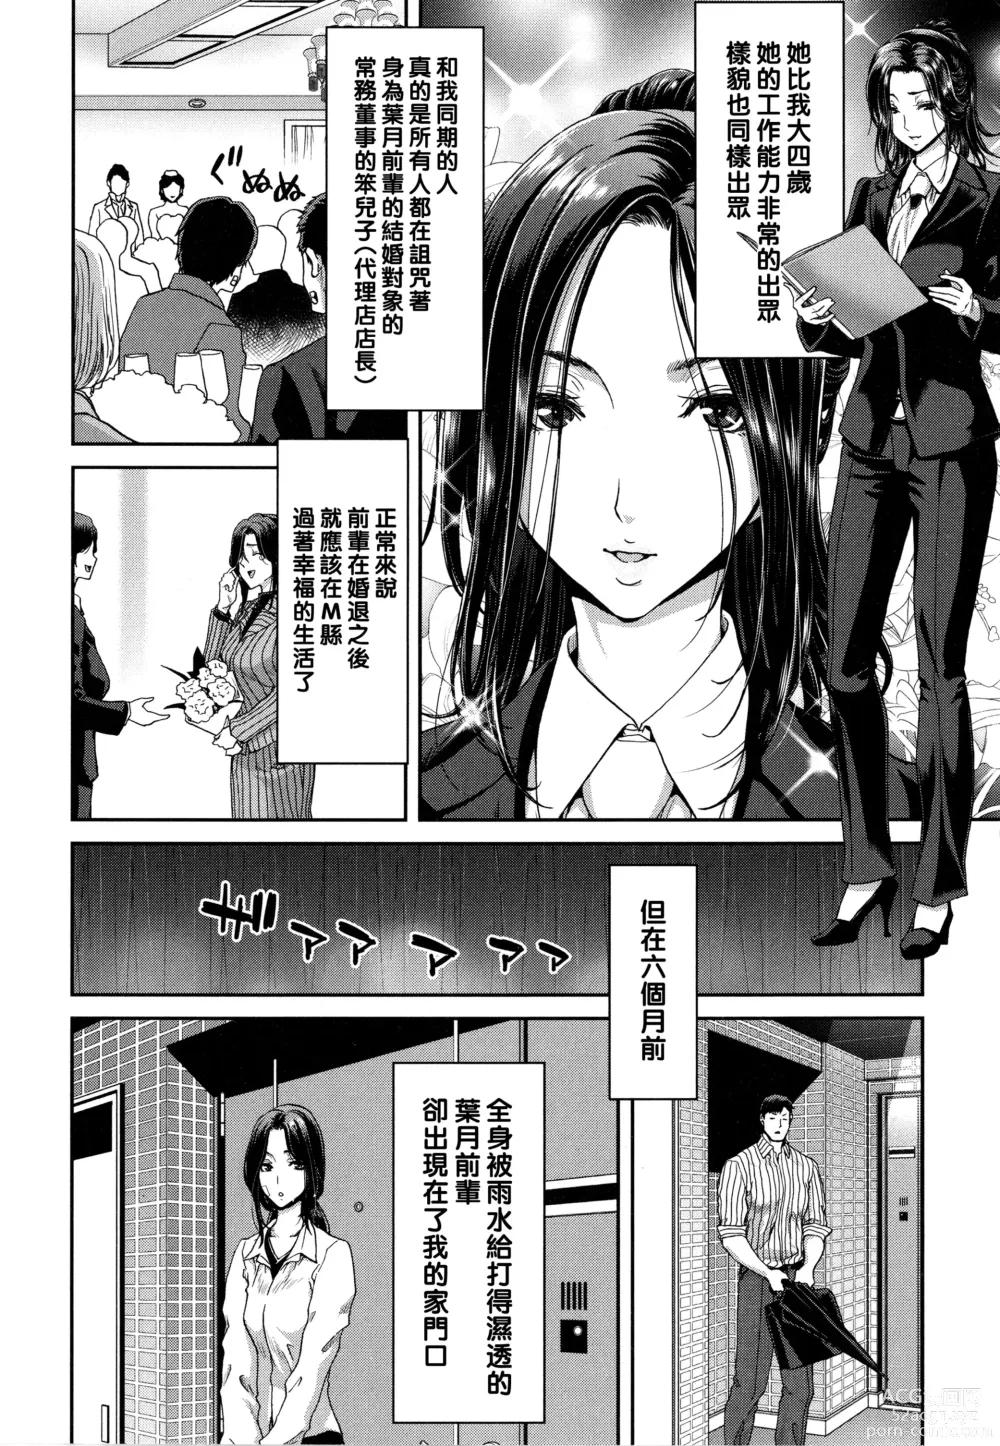 Page 8 of manga Iede Onna o Hirottara - When I picked up a runaway girl. + Melonbooks Gentei Tokuten   Otona no Iede Gojitsudan Sono Ato no Arisa to Akira